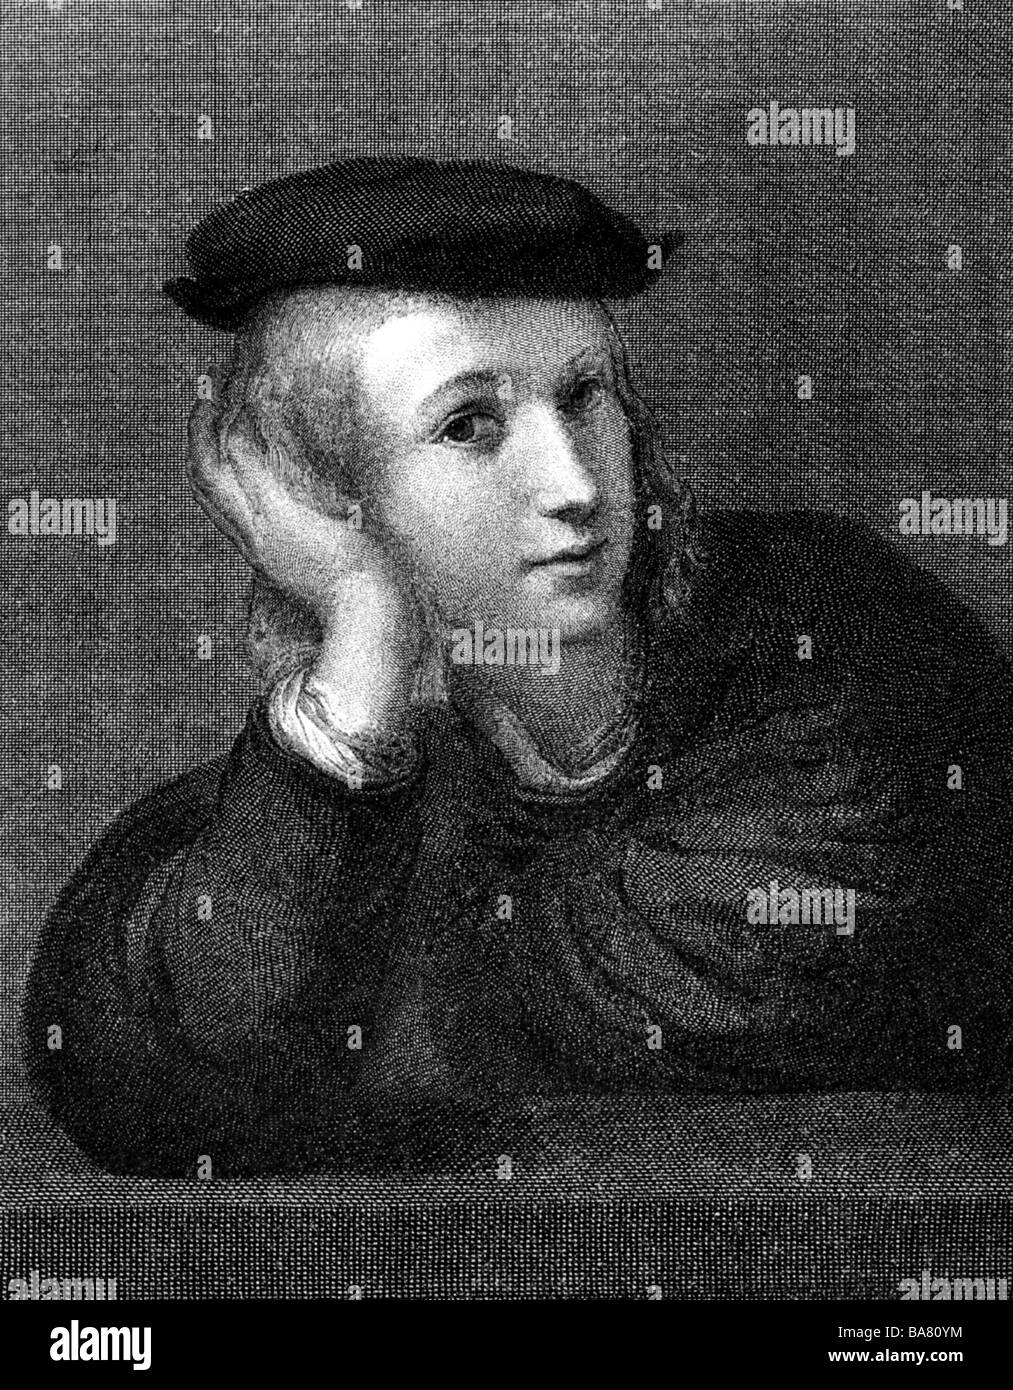 Raffaello, Sanzio da Urbino, 6.4.1483 - 6.4.1520, pittore italiano, ritratto, incisione di Edouard Mandel, dopo l'autoritratto di Raffaello, Foto Stock